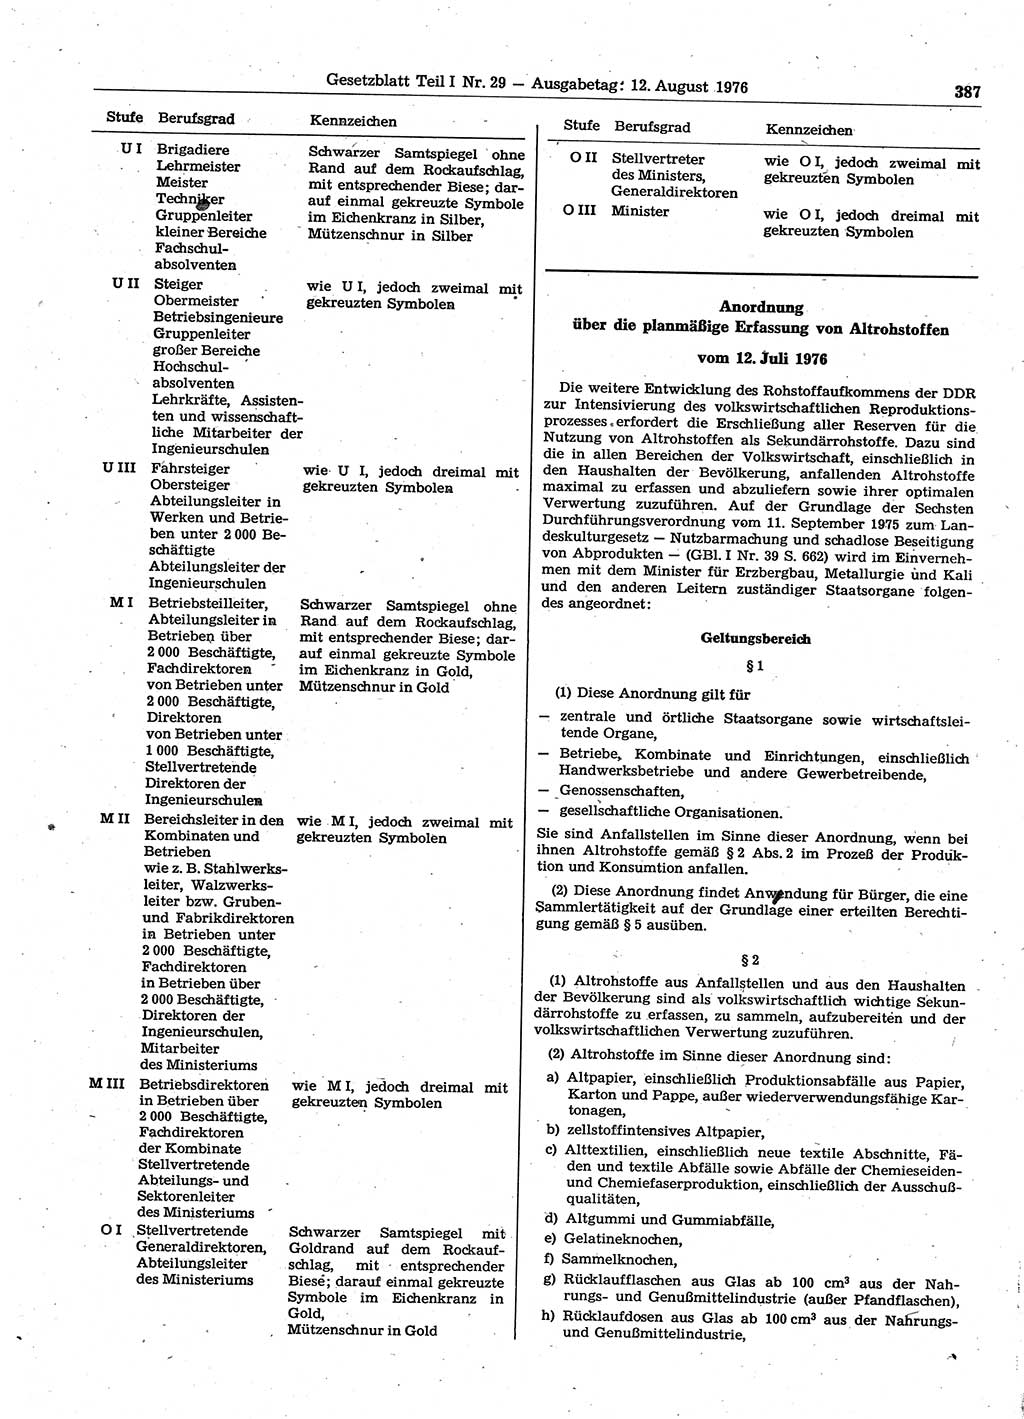 Gesetzblatt (GBl.) der Deutschen Demokratischen Republik (DDR) Teil Ⅰ 1976, Seite 387 (GBl. DDR Ⅰ 1976, S. 387)